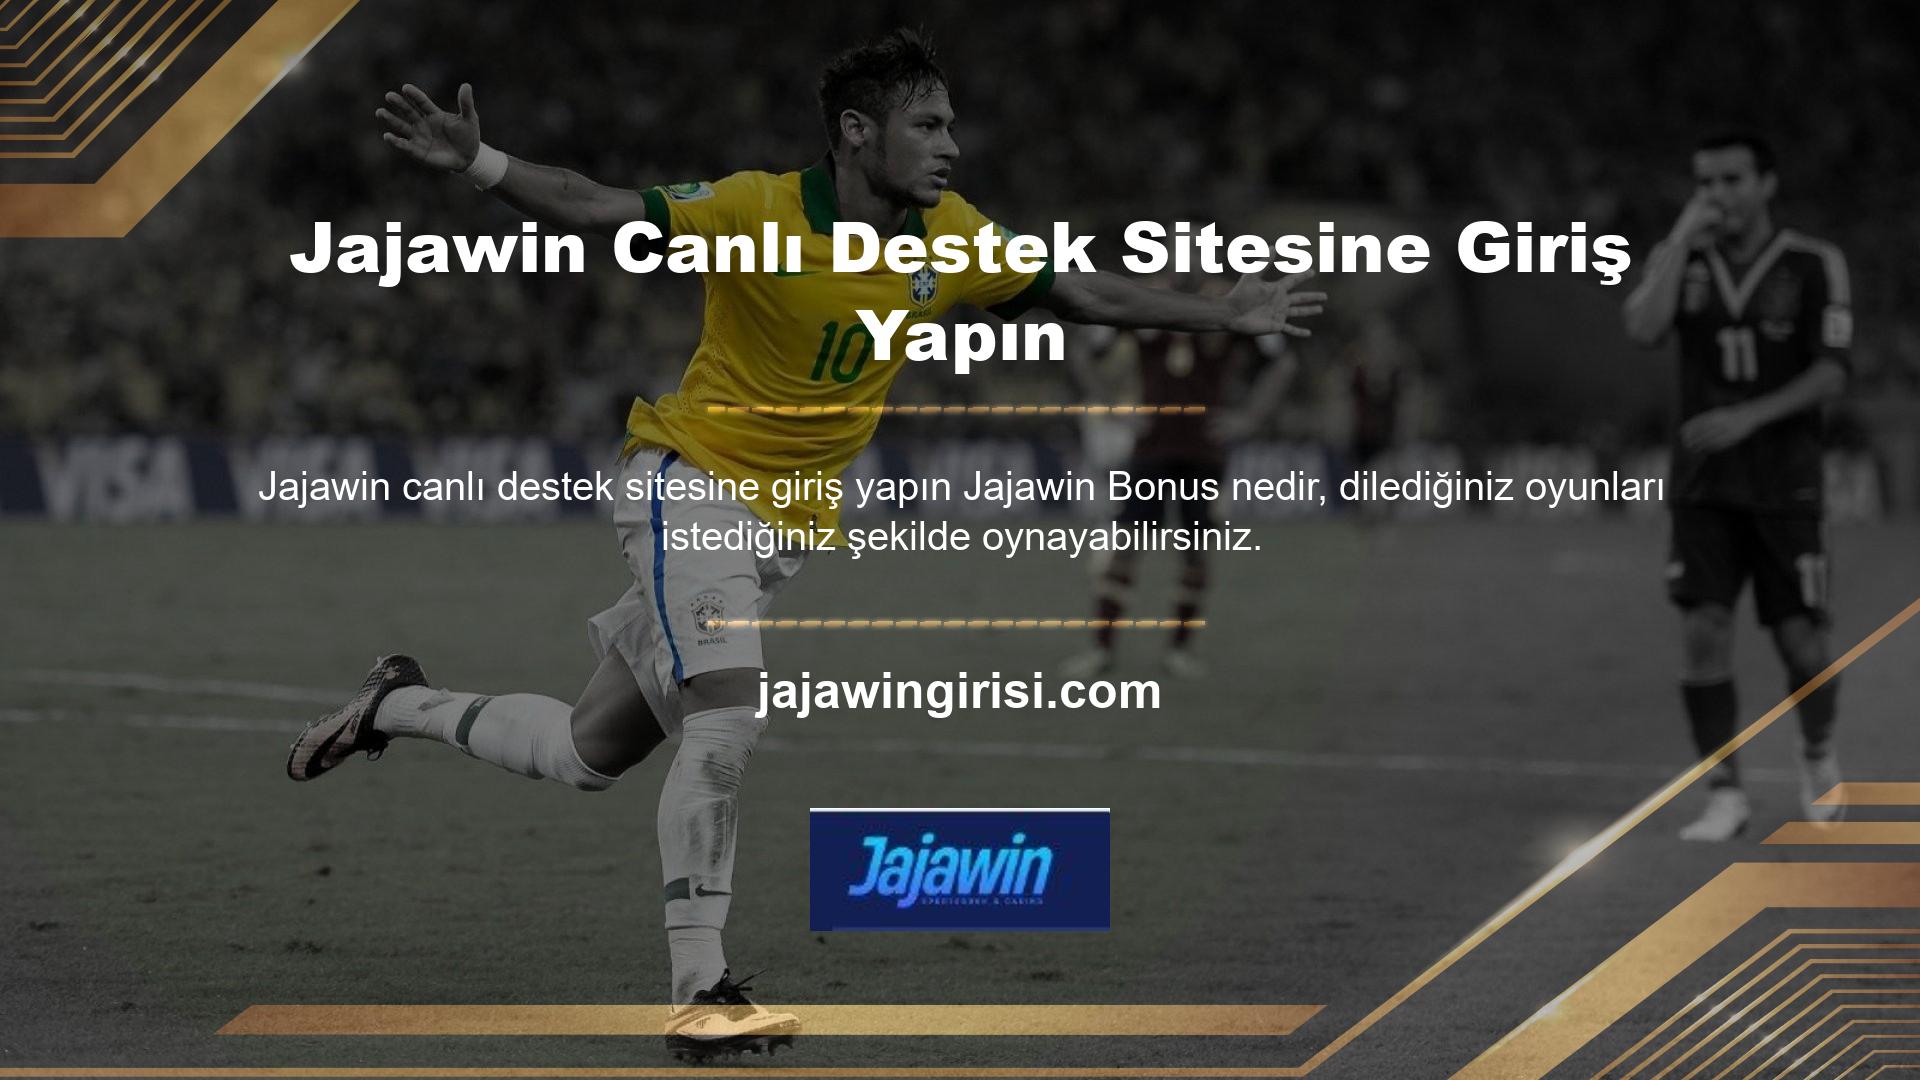 Jajawin sitesine üye olup hesabınıza para yatırdığınızda siteden yatırım ödülleri alabilirsiniz